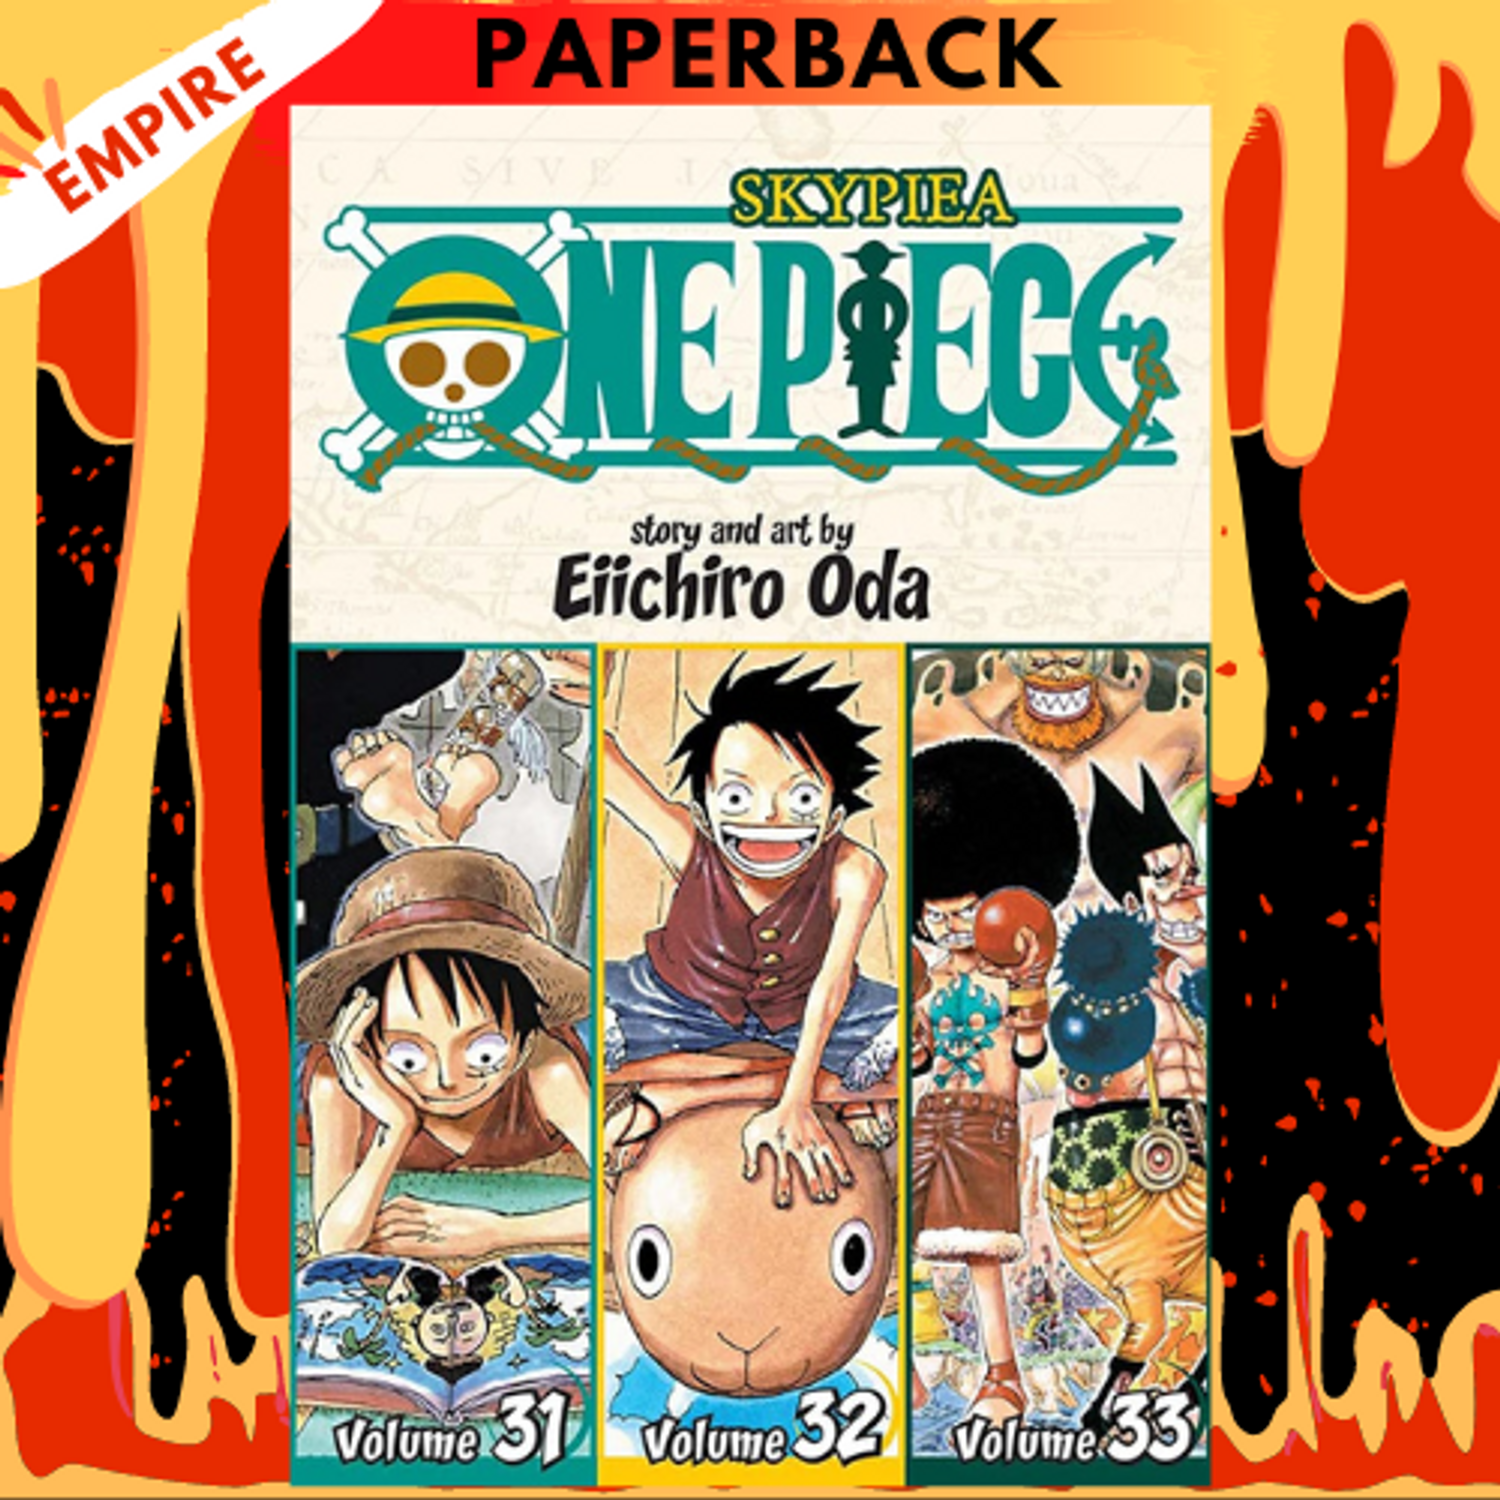 One Piece. Omnibus, Vol. 32 by Eiichiro Oda